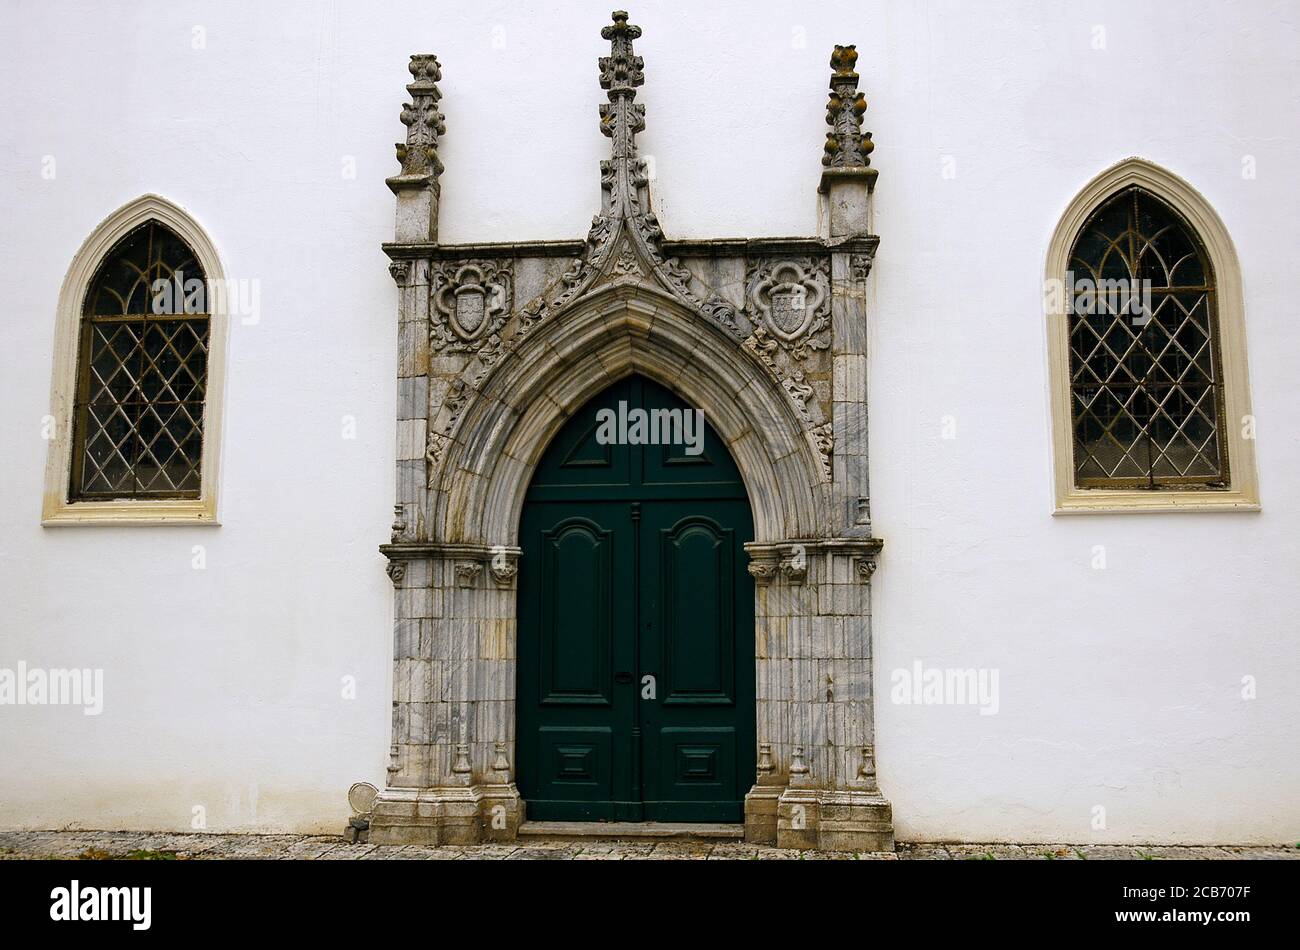 Portugal, Region Alentejo, Beja. Kloster unserer Lieben Frau von der Empfängnis (Convento de Nossa Senhora da Conceiçao), eine Gemeinde der Klarissen. Es wurde 1495 gegründet. Heute Museum Rainha Dona Leonor. Blick auf eine der Türen. Stockfoto